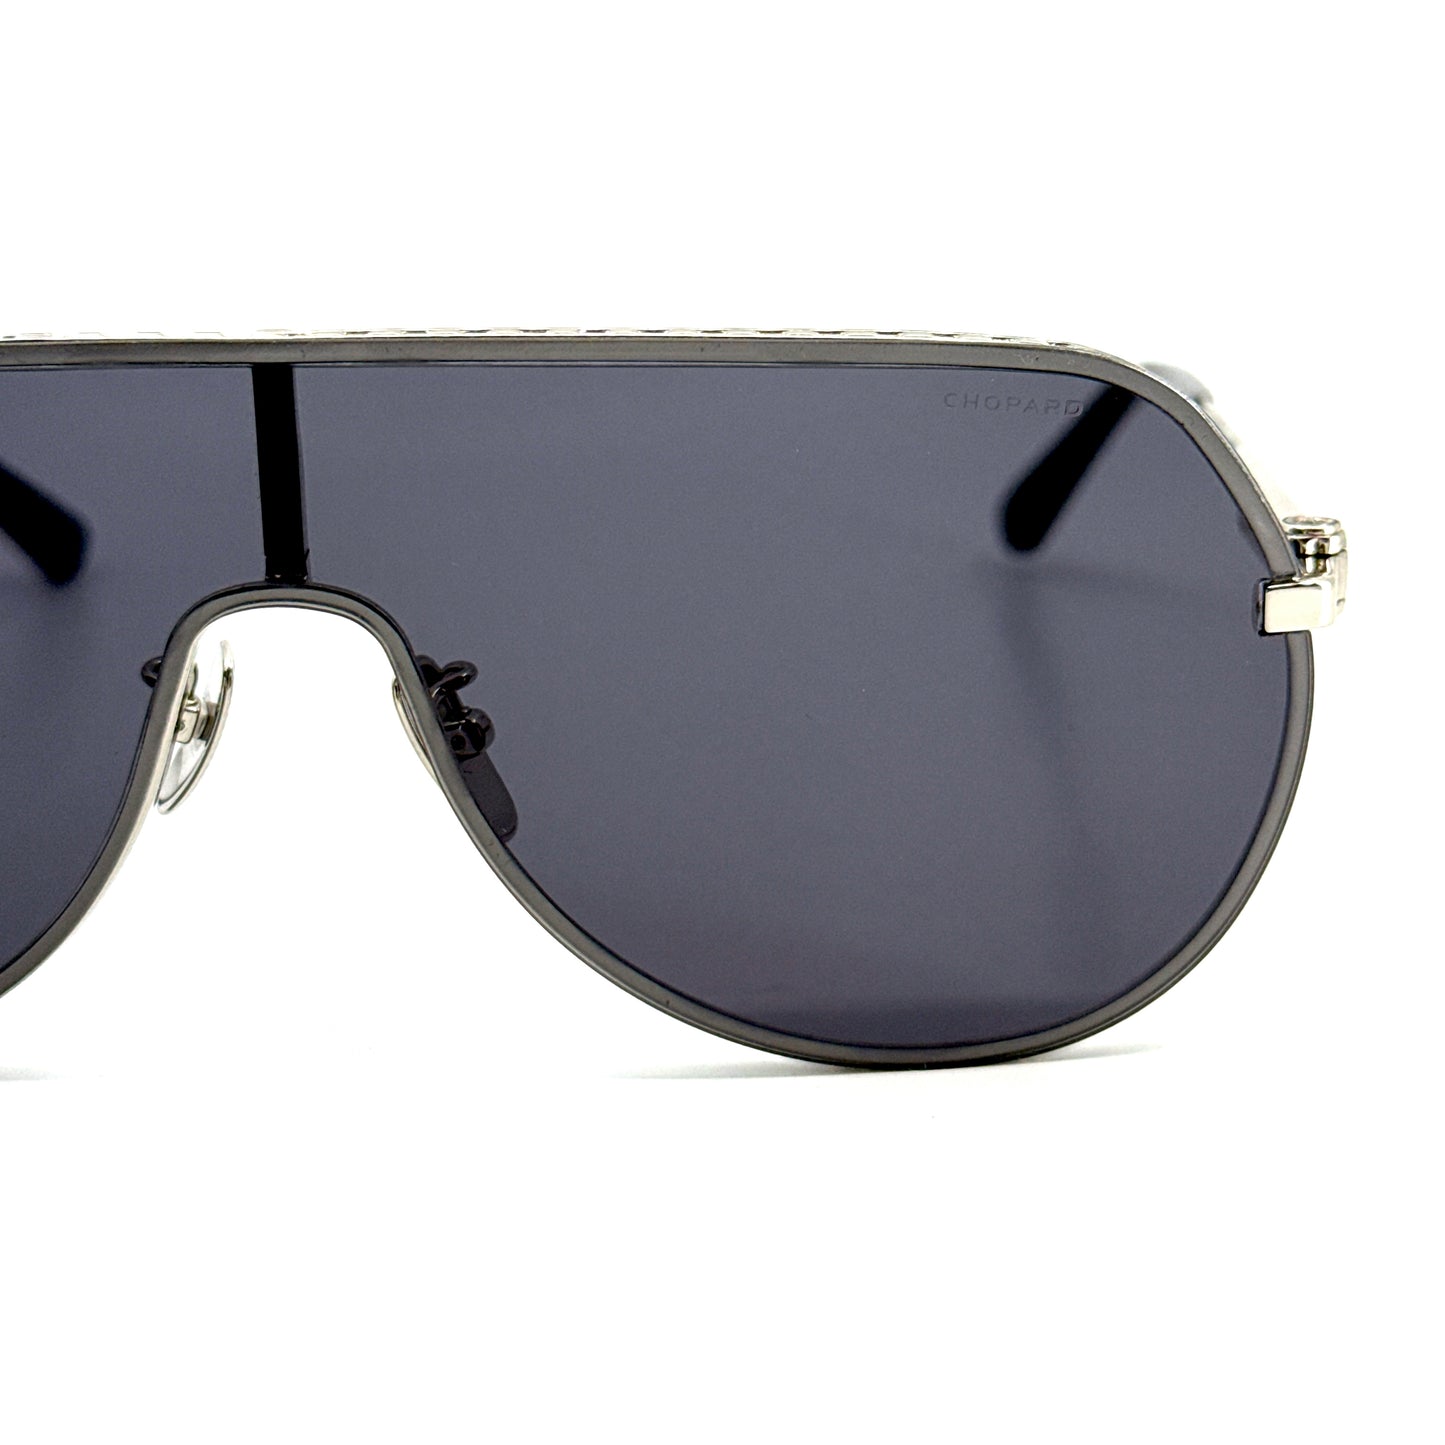 CHOPARD Sunglasses SCHG64 579X